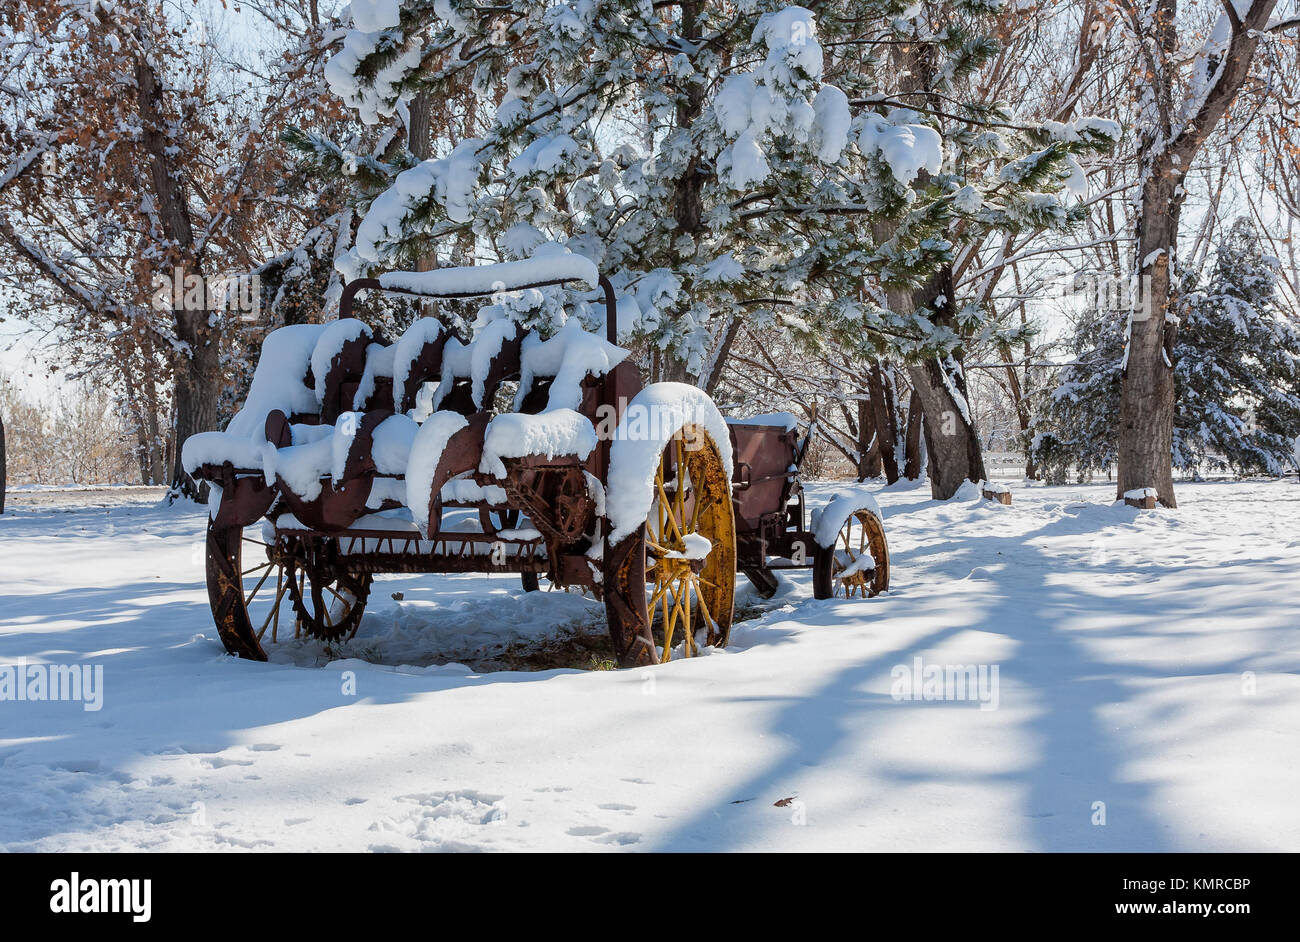 La nieve acumulada en el oxidado viejo equipo agrícola Foto de stock